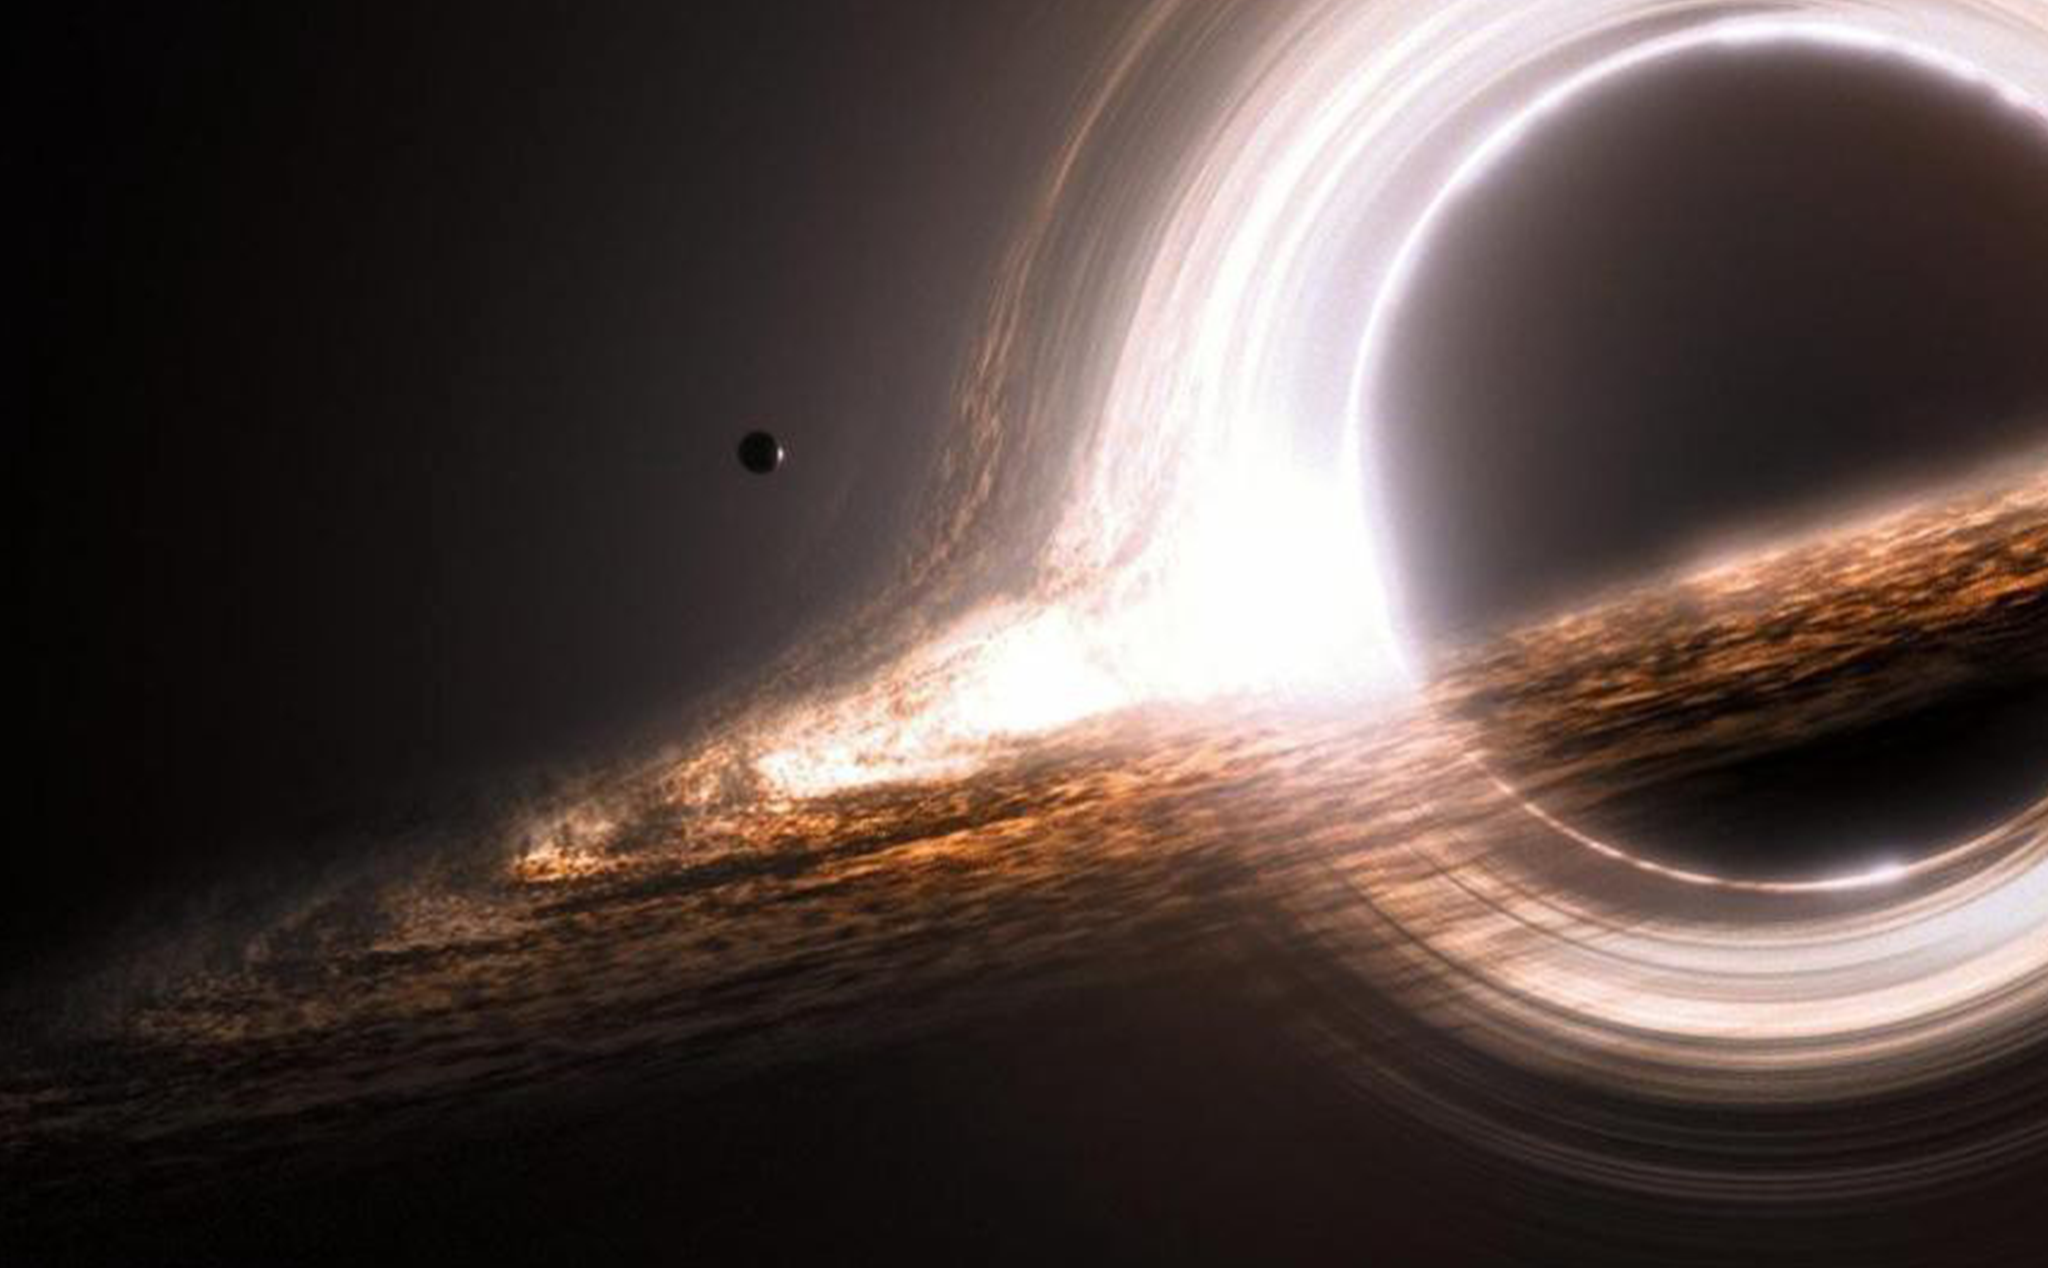 Hố đen vũ trụ là một trong những điều kỳ diệu nhất trong vũ trụ! Hãy xem hình ảnh để tìm hiểu thêm về cách chúng hoạt động và tác động đến các hành tinh và thiên thể gần đó.